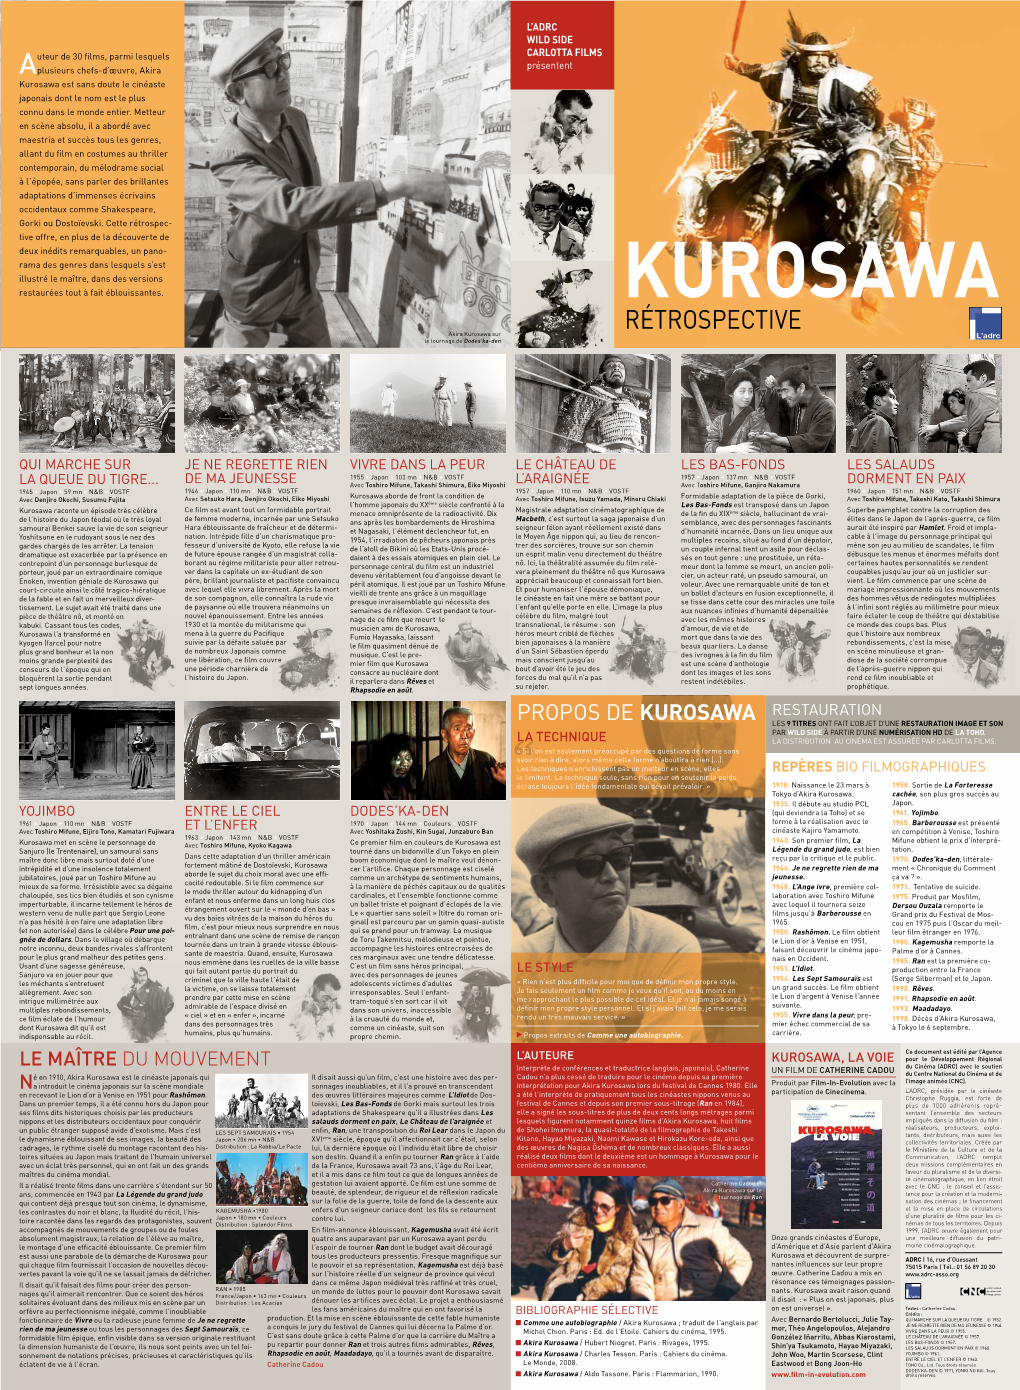 Akira Kurosawa Est Sans Doute Le Cinéaste Japonais Dont Le Nom Est Le Plus Connu Dans Le Monde Entier